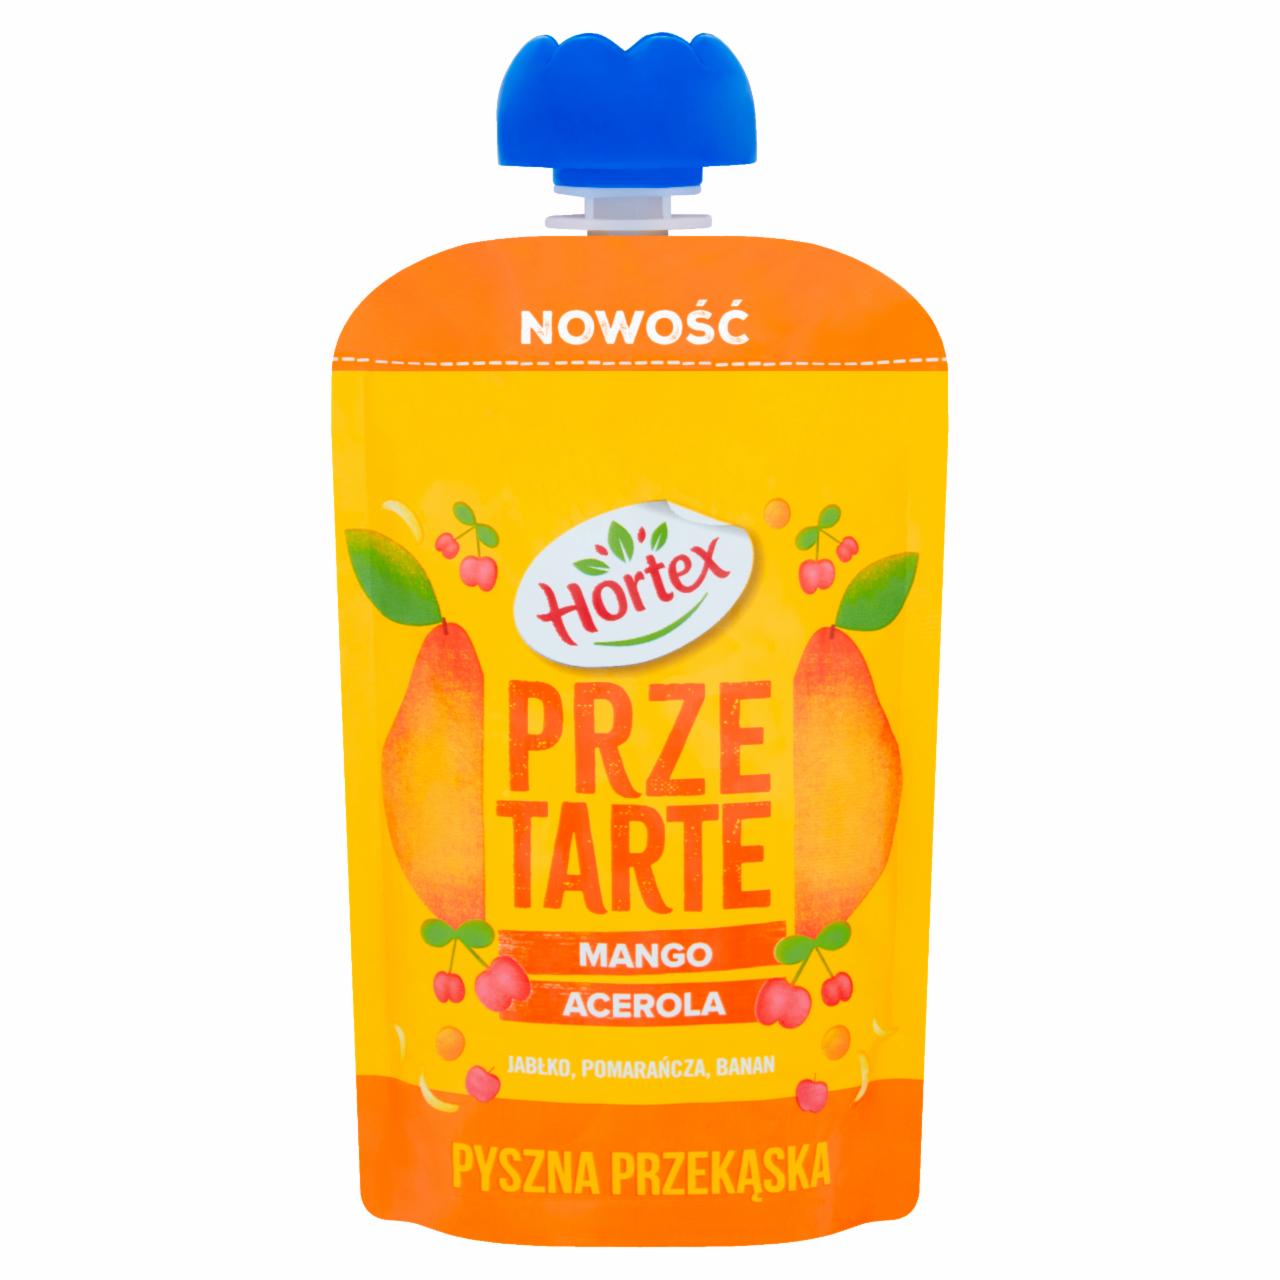 Zdjęcia - Hortex Przetarte Premium mus owocowy jabłko banan mango pomarańcza acerola 100 g